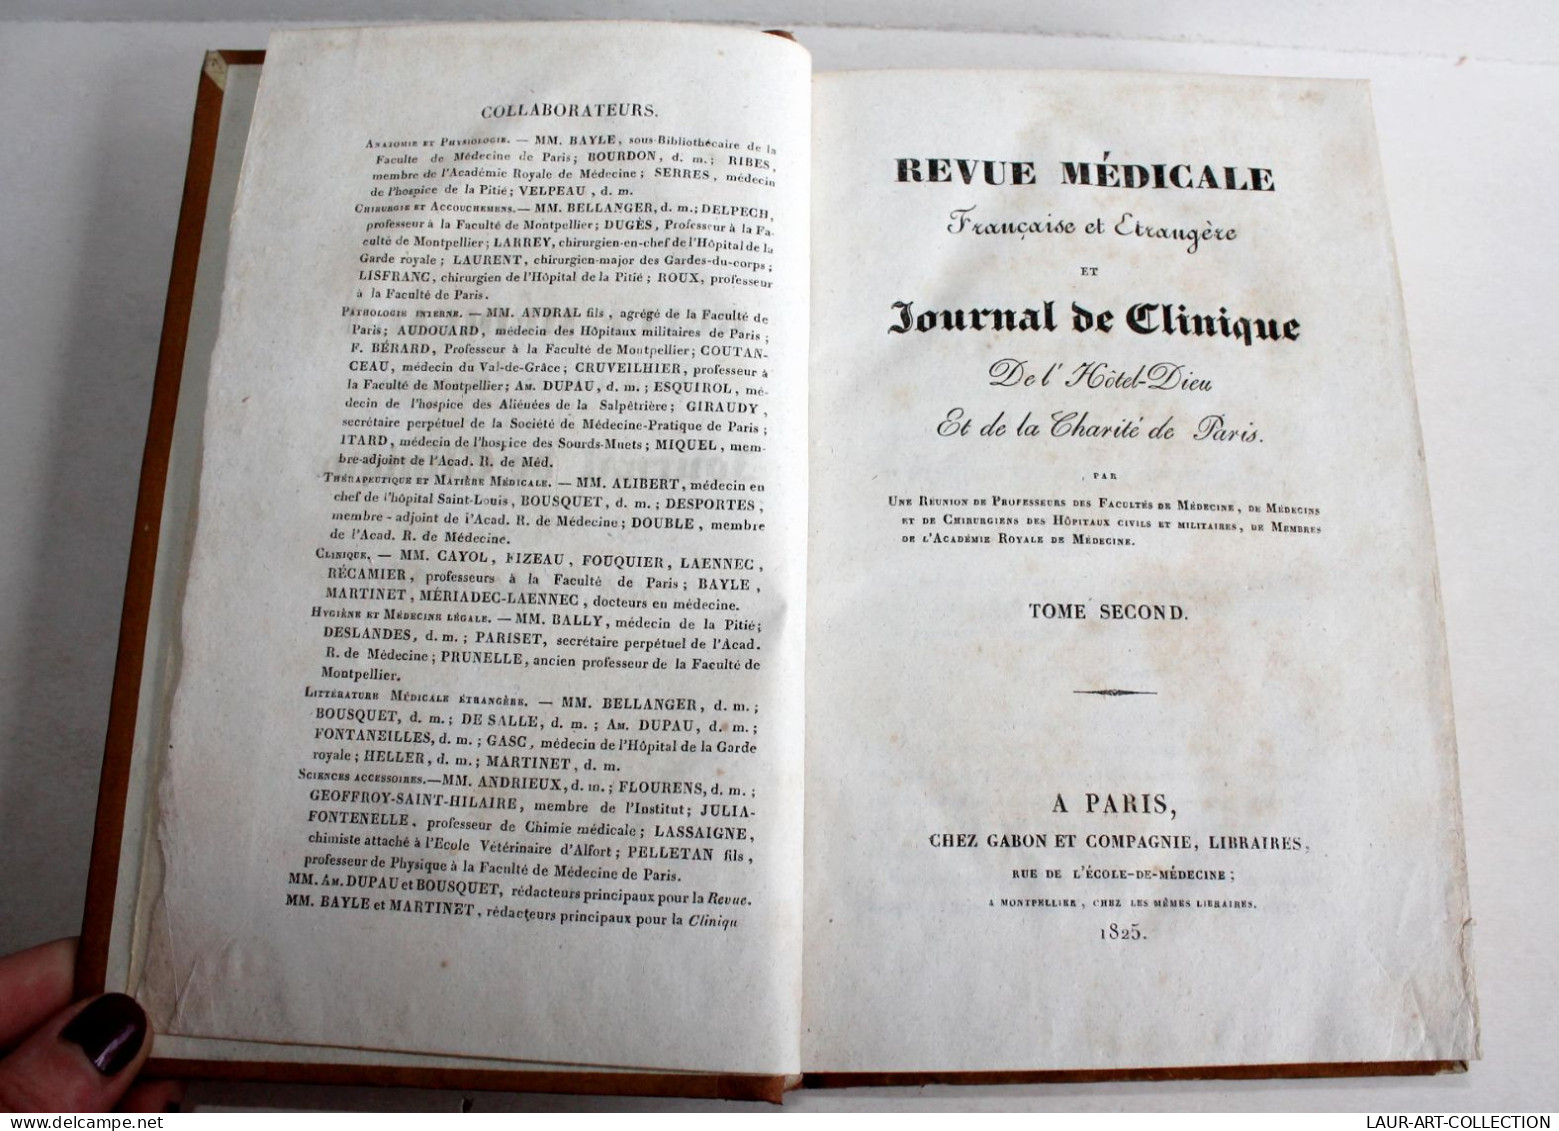 REVUE MEDICALE FRANCAISE & ETRANGERE ET JOURNAL CLINIQUE DE L'HOTEL DIEU 1825 T2 / ANCIEN LIVRE XIXe SIECLE (2603.140) - Health